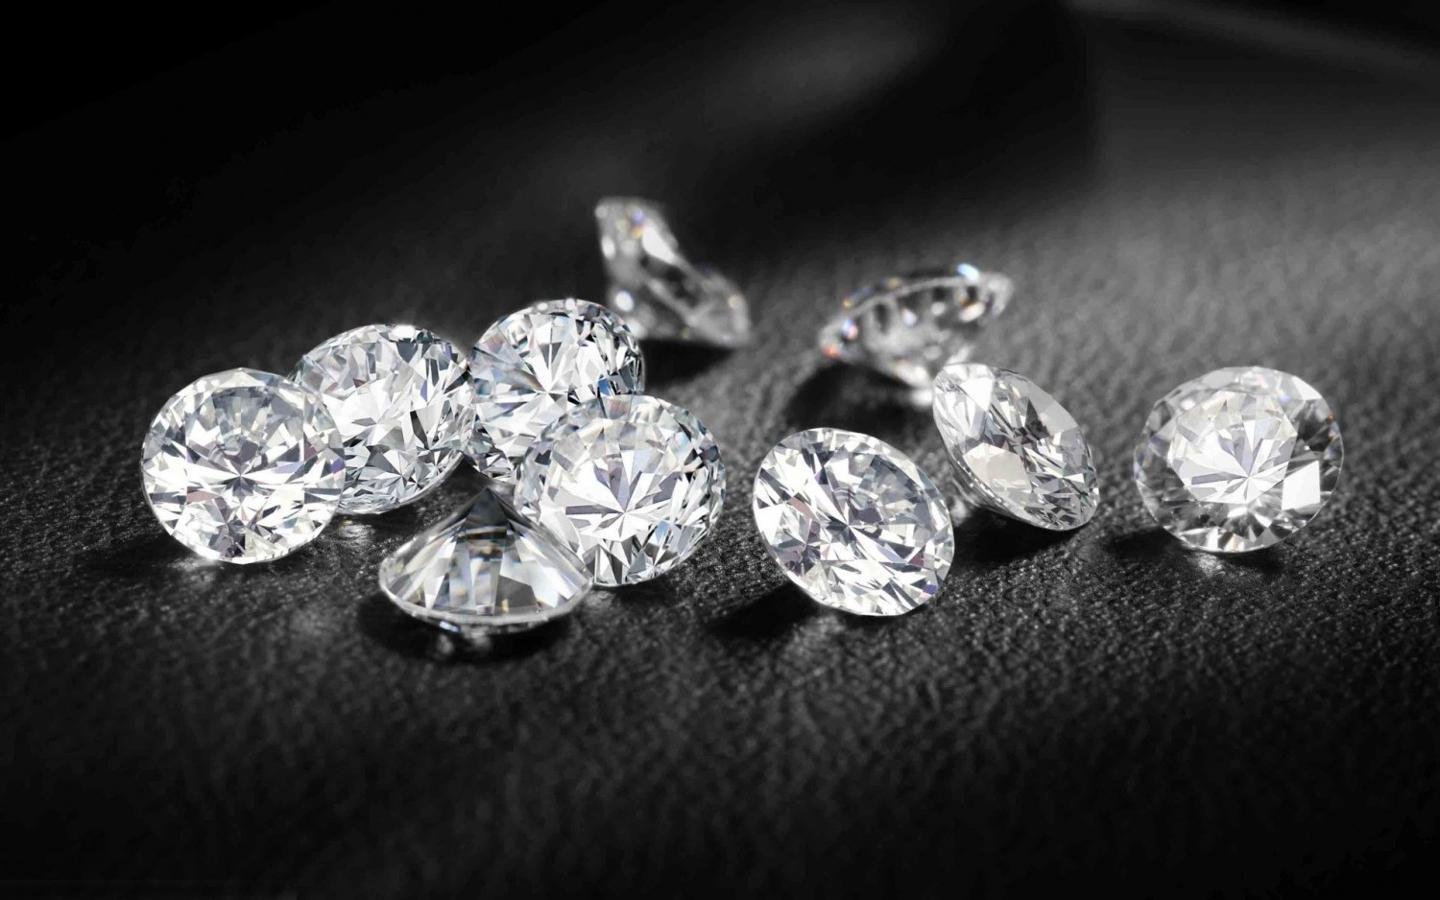 購買鑽石是睿智的投資